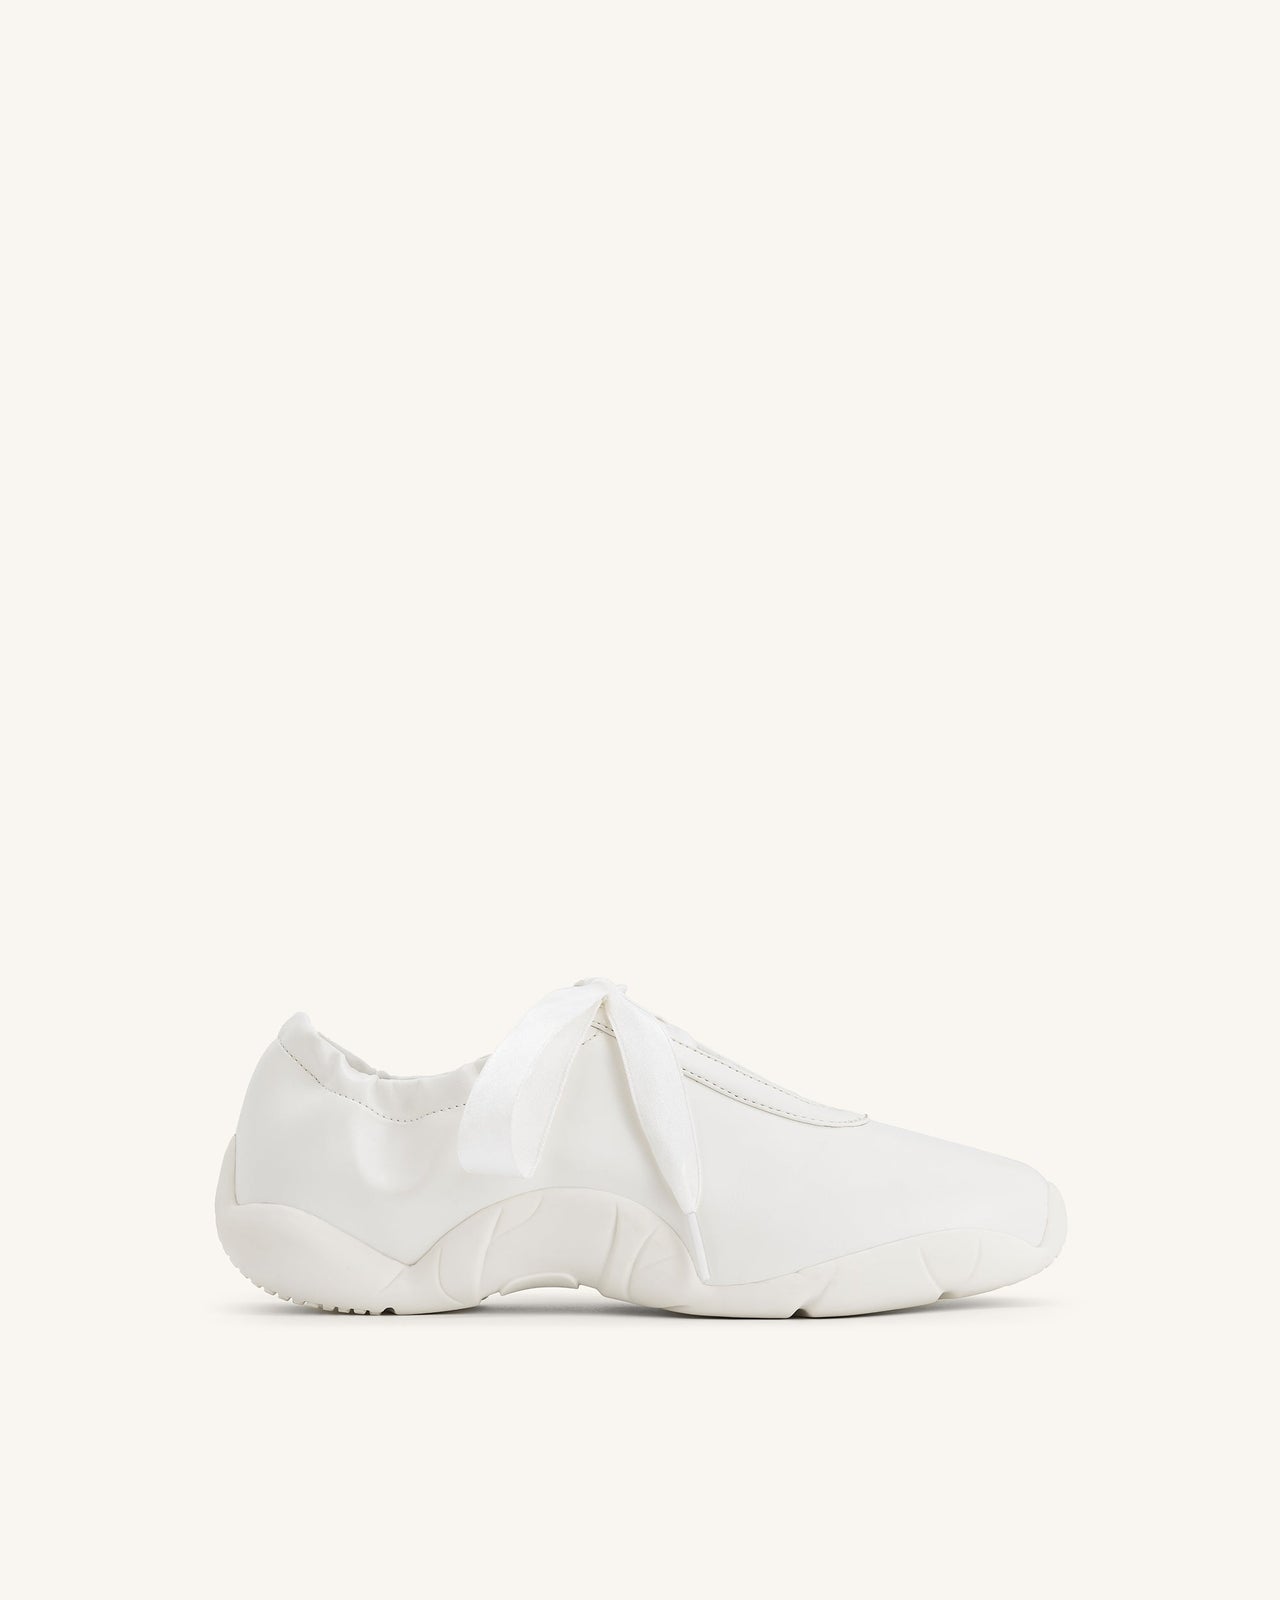 Flavia 芭蕾舞鞋 - 白色